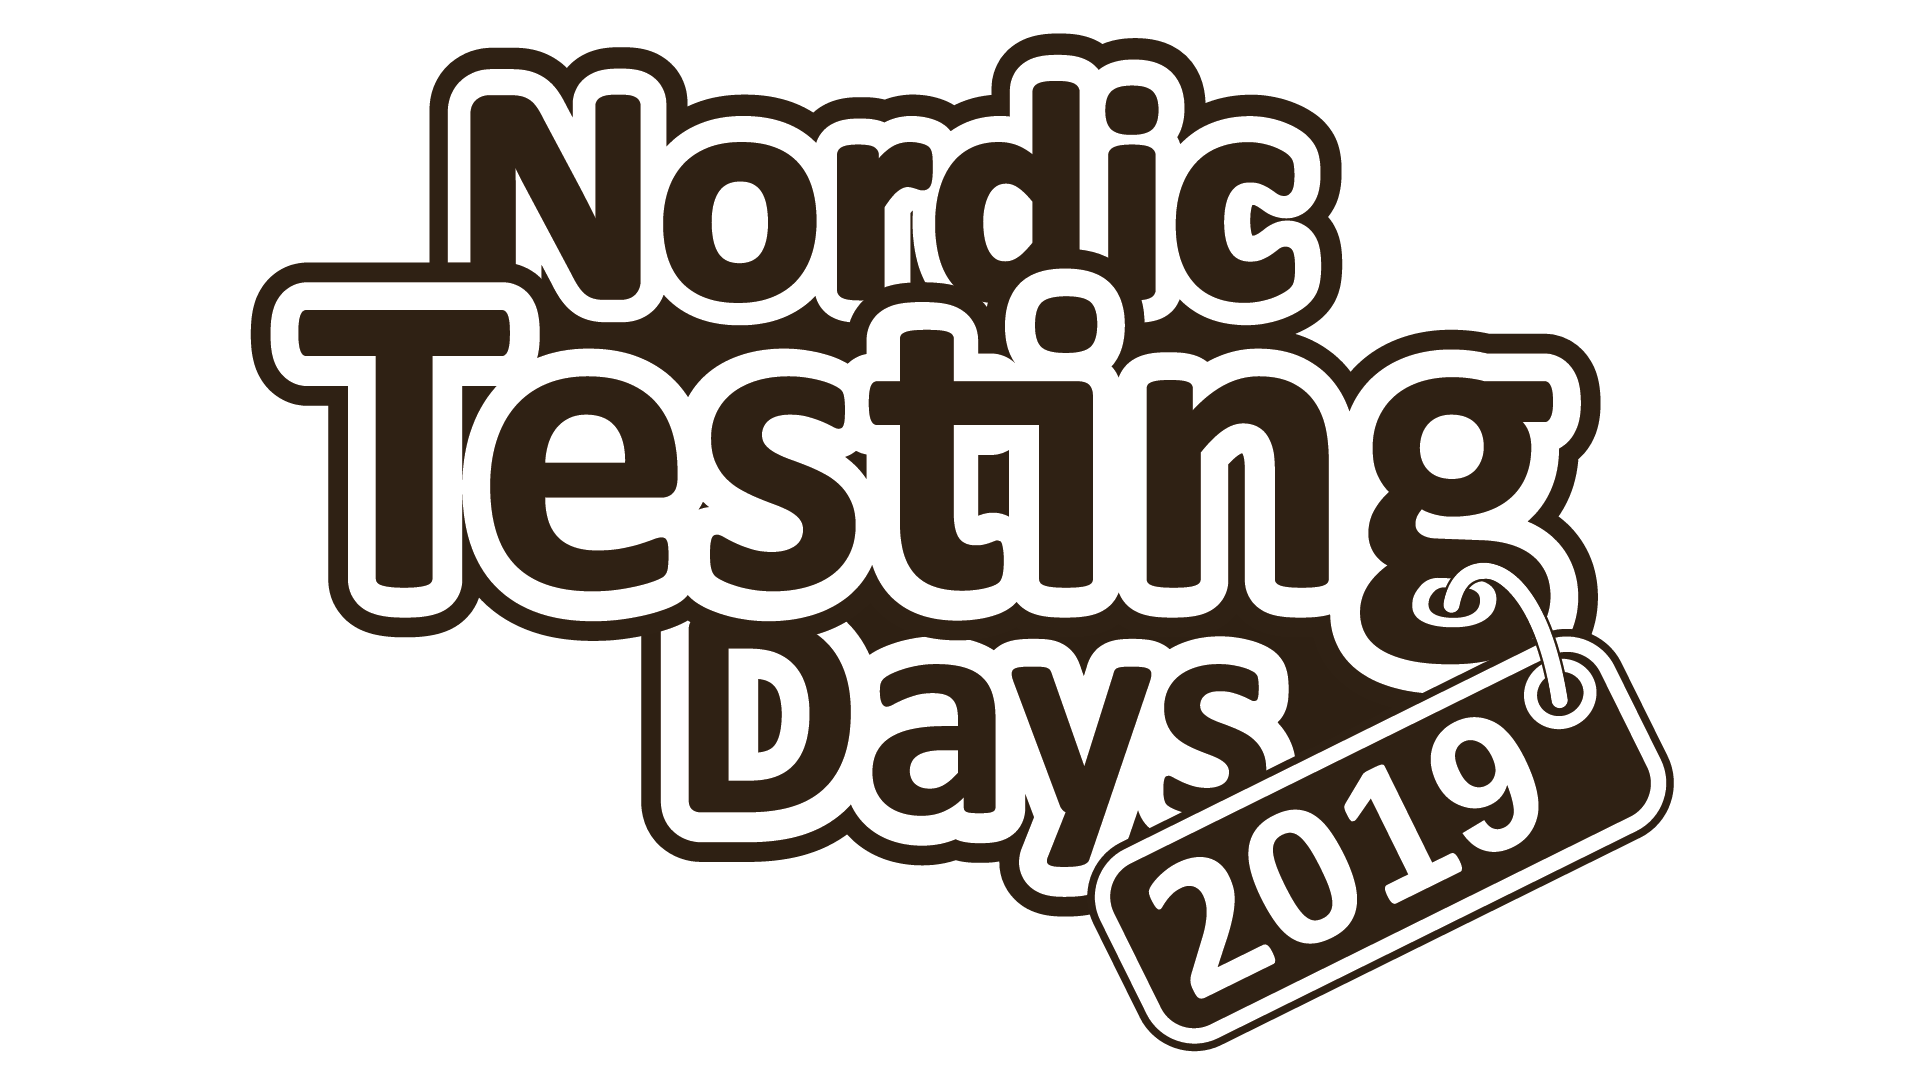 Nordic Testing Days logo